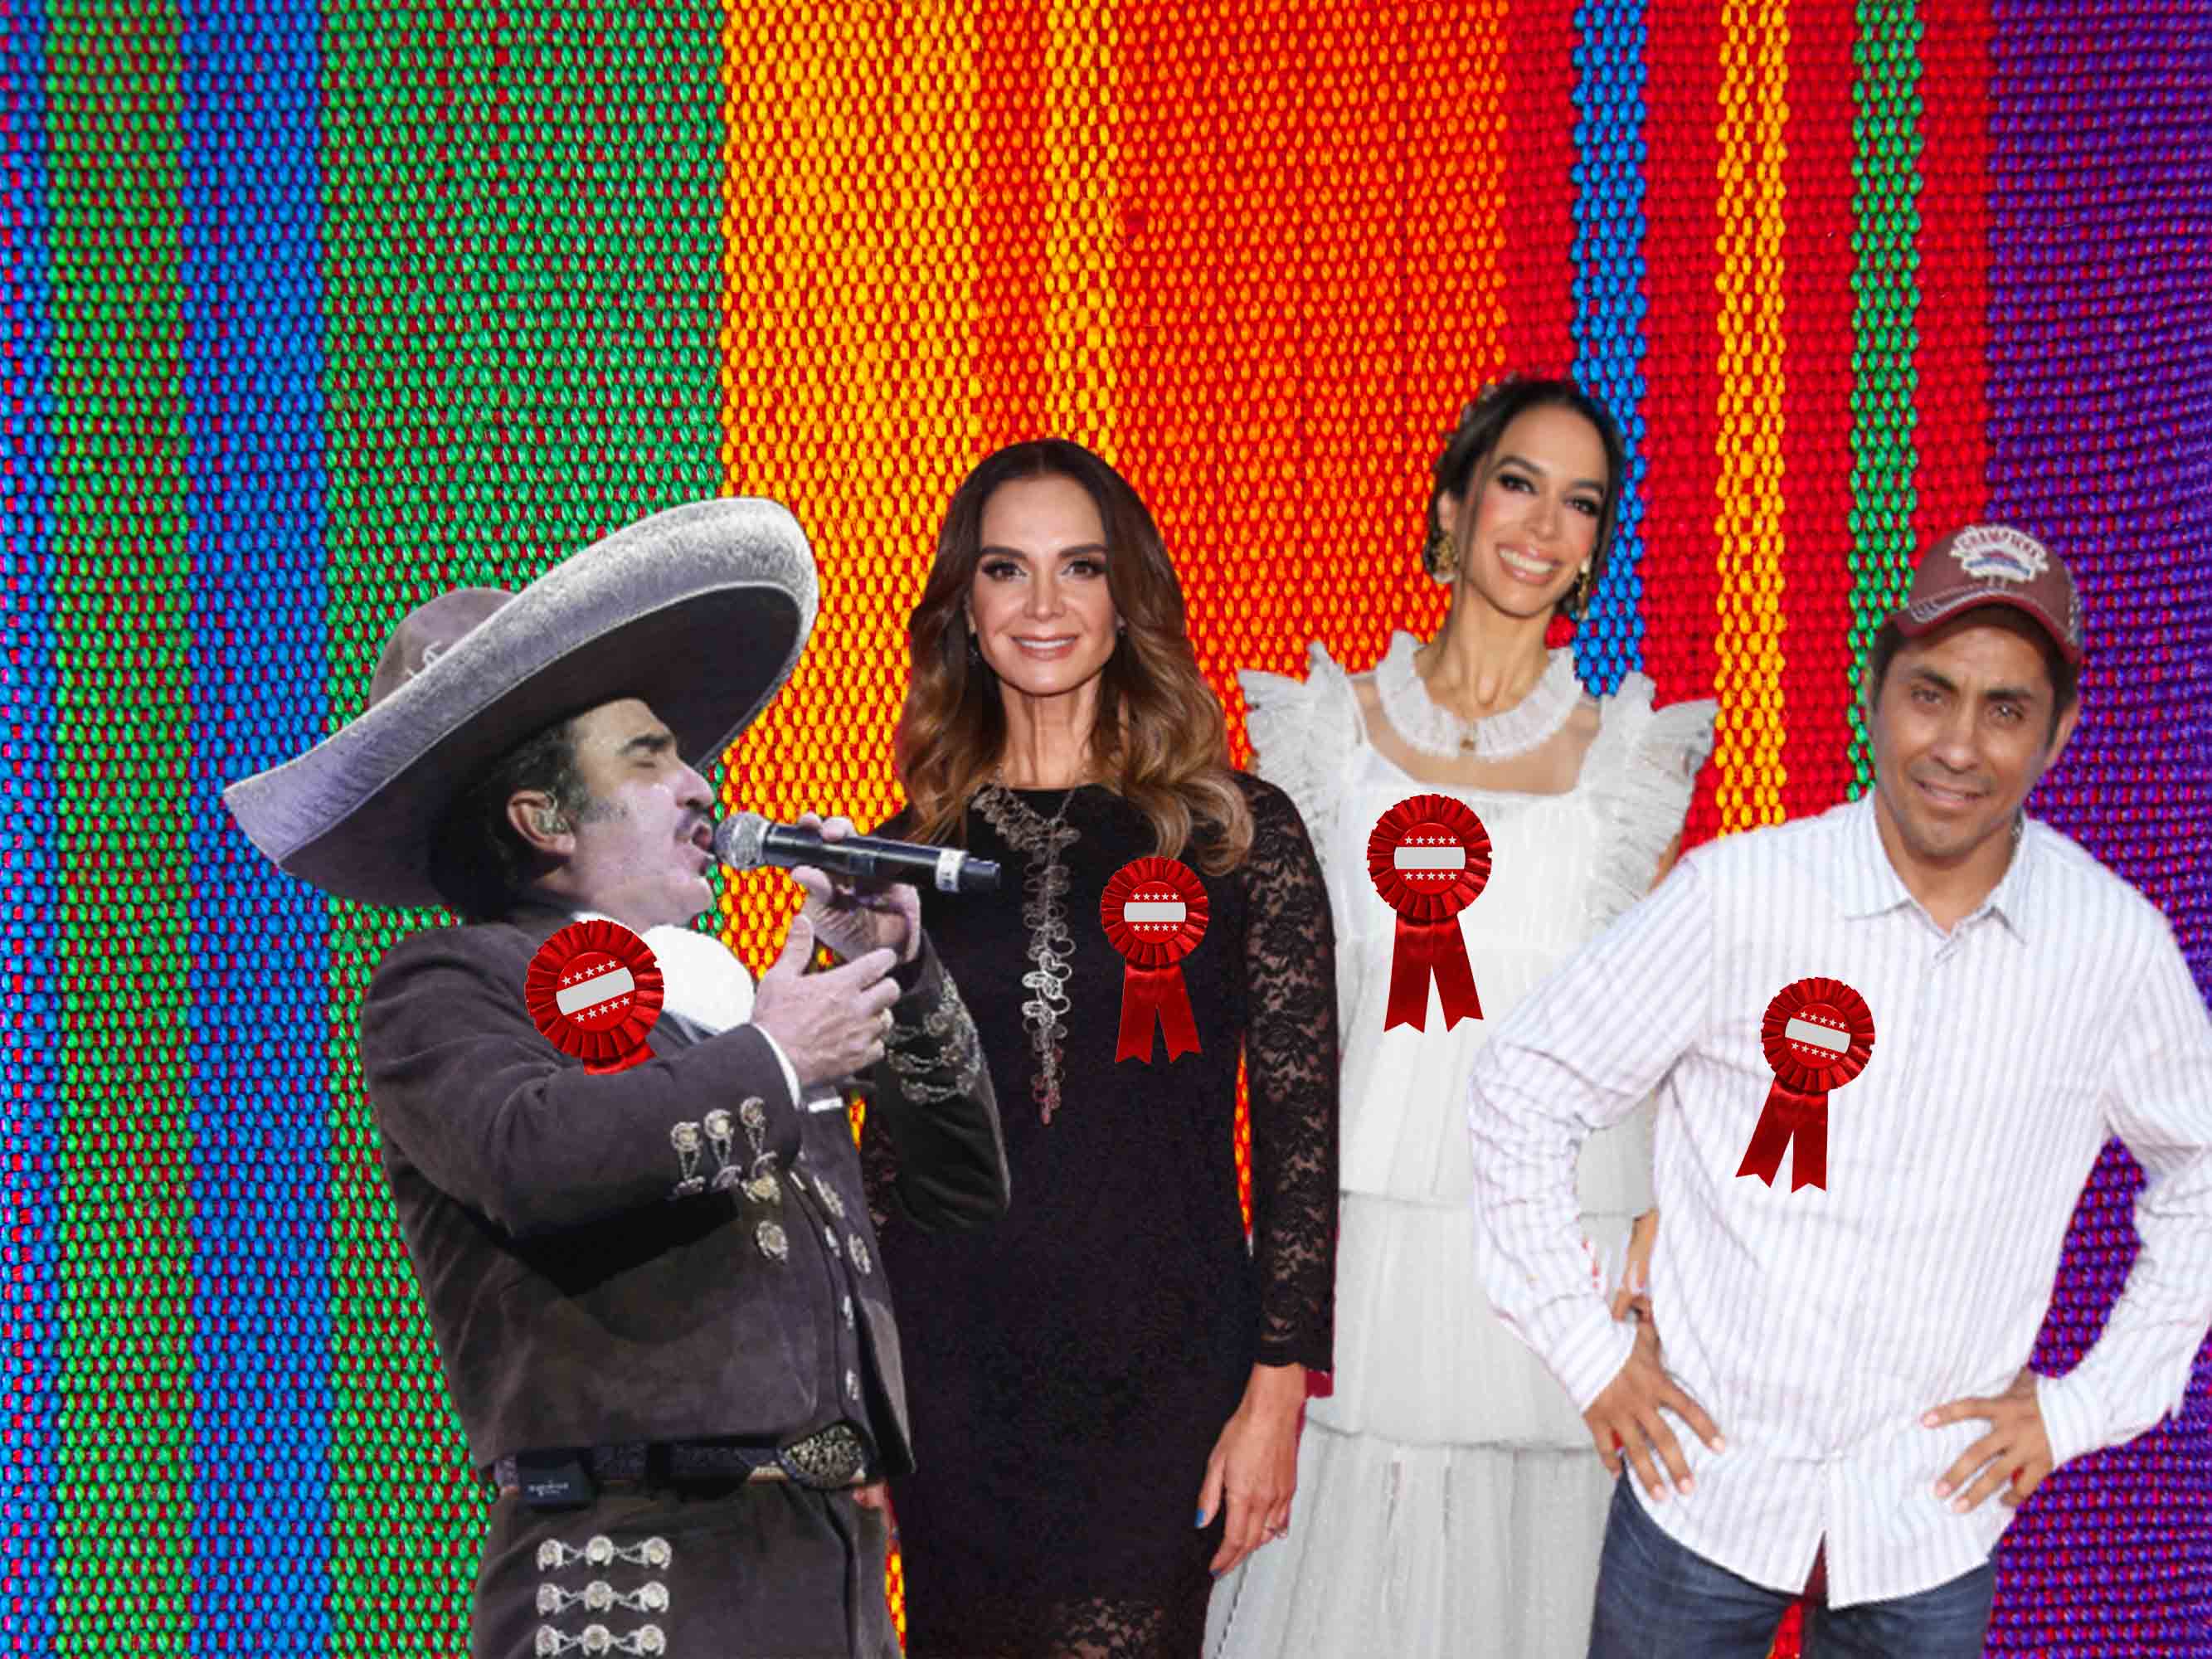 En un año tan importante para el futuro de México, los partidos políticos apostaron por reclutar celebridades.